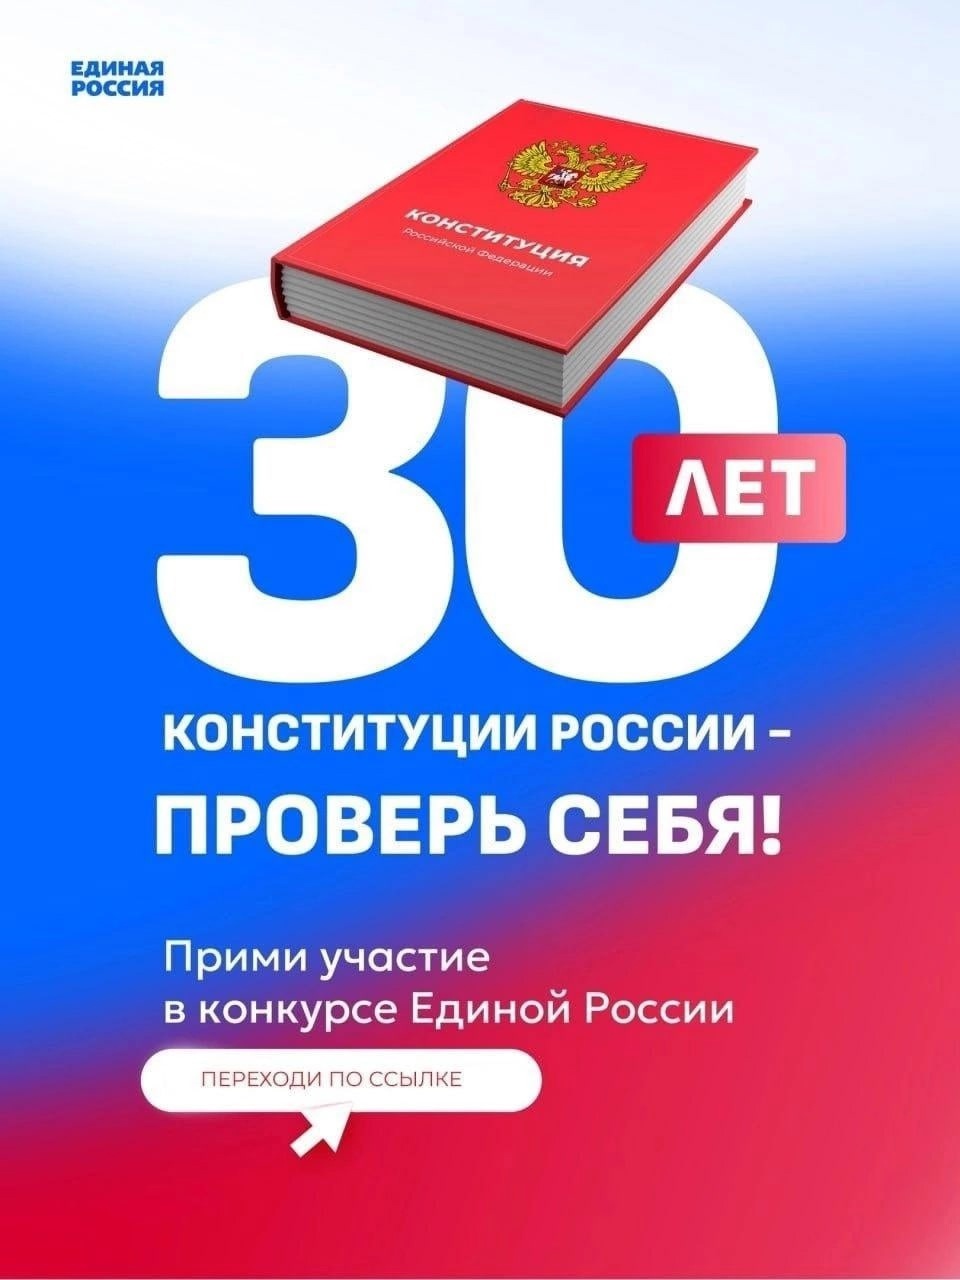 🇷🇺 Конкурс «30 лет Конституции России - проверь себя!».